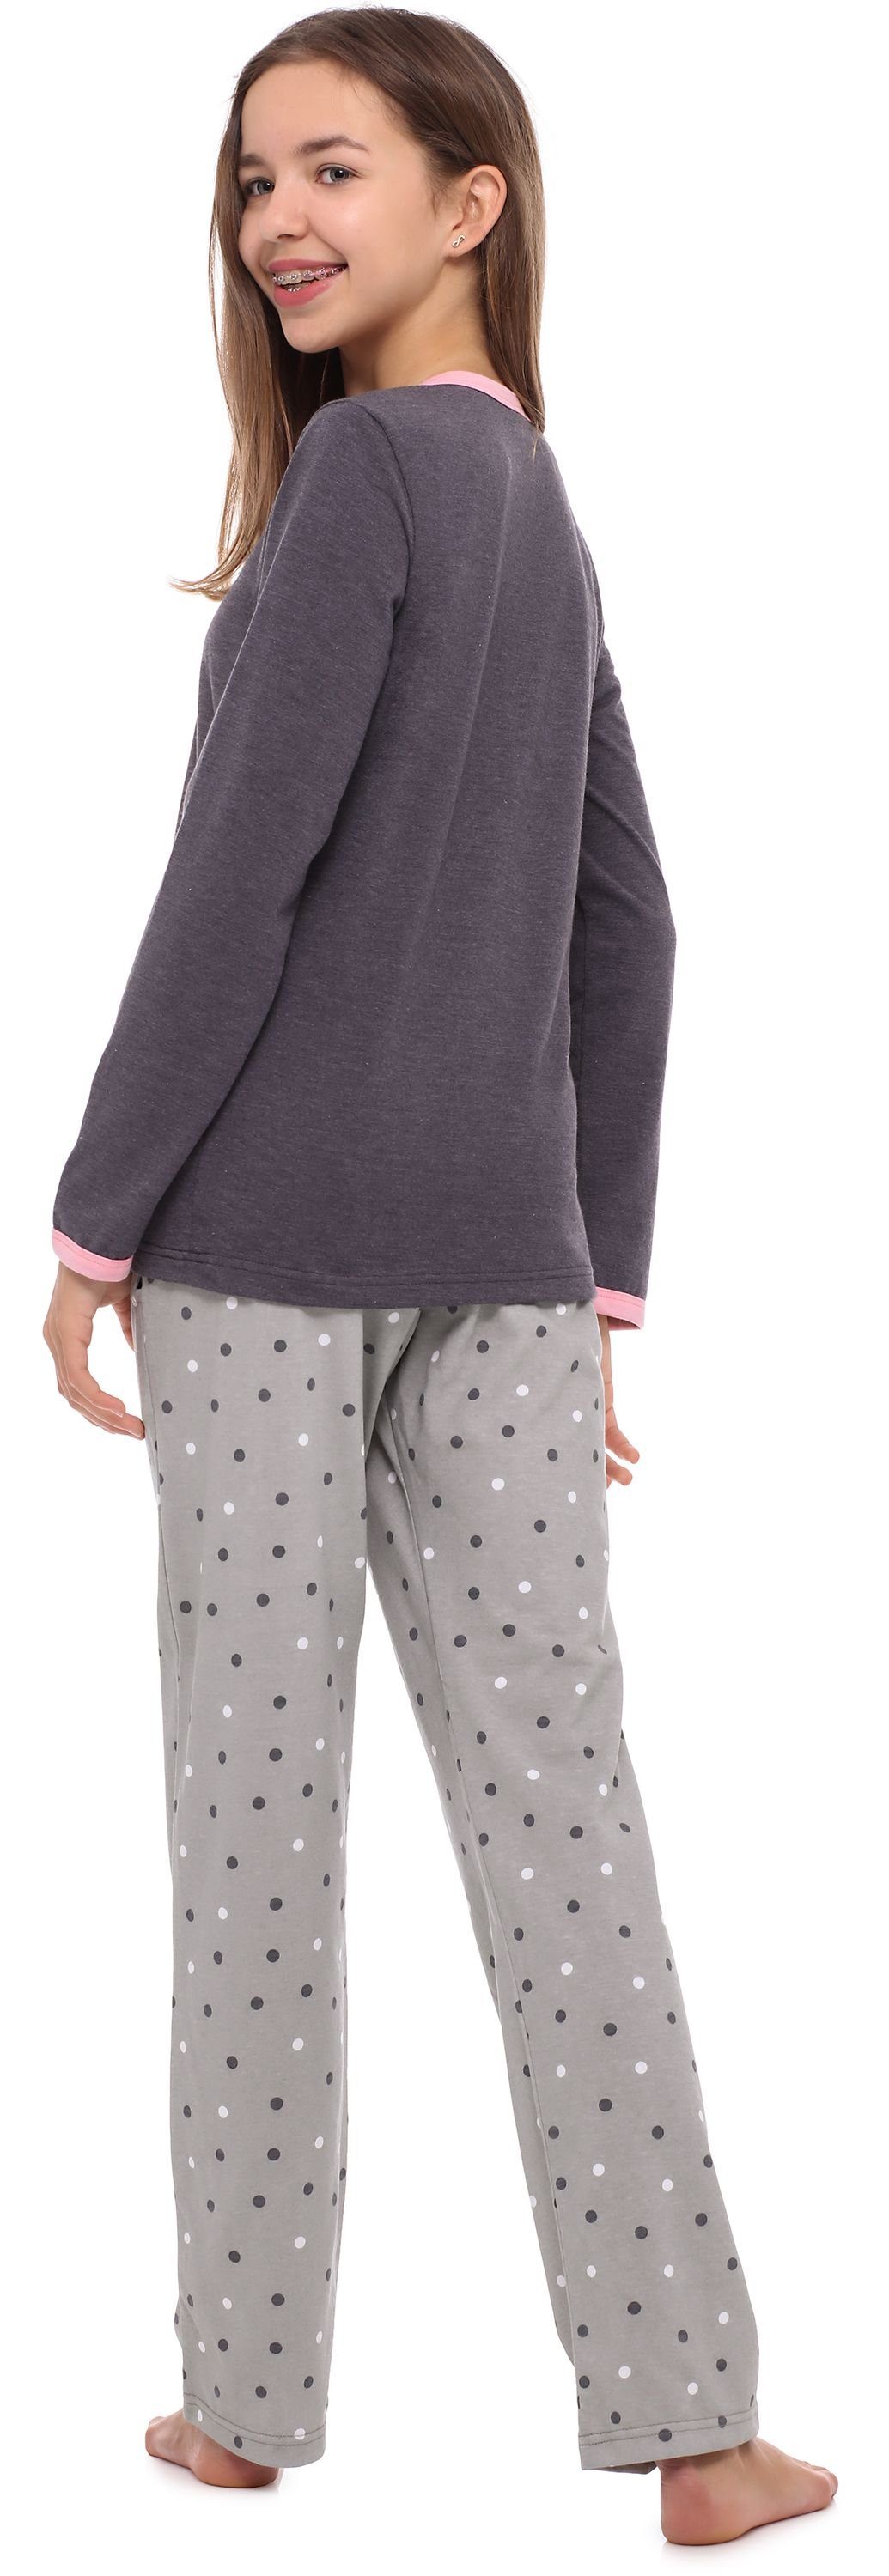 Pyjama Schlafanzug Schlafanzug Style MS10-192 Merry Zweiteilieger Winter Lang Dunkelmelange/Grau Damen